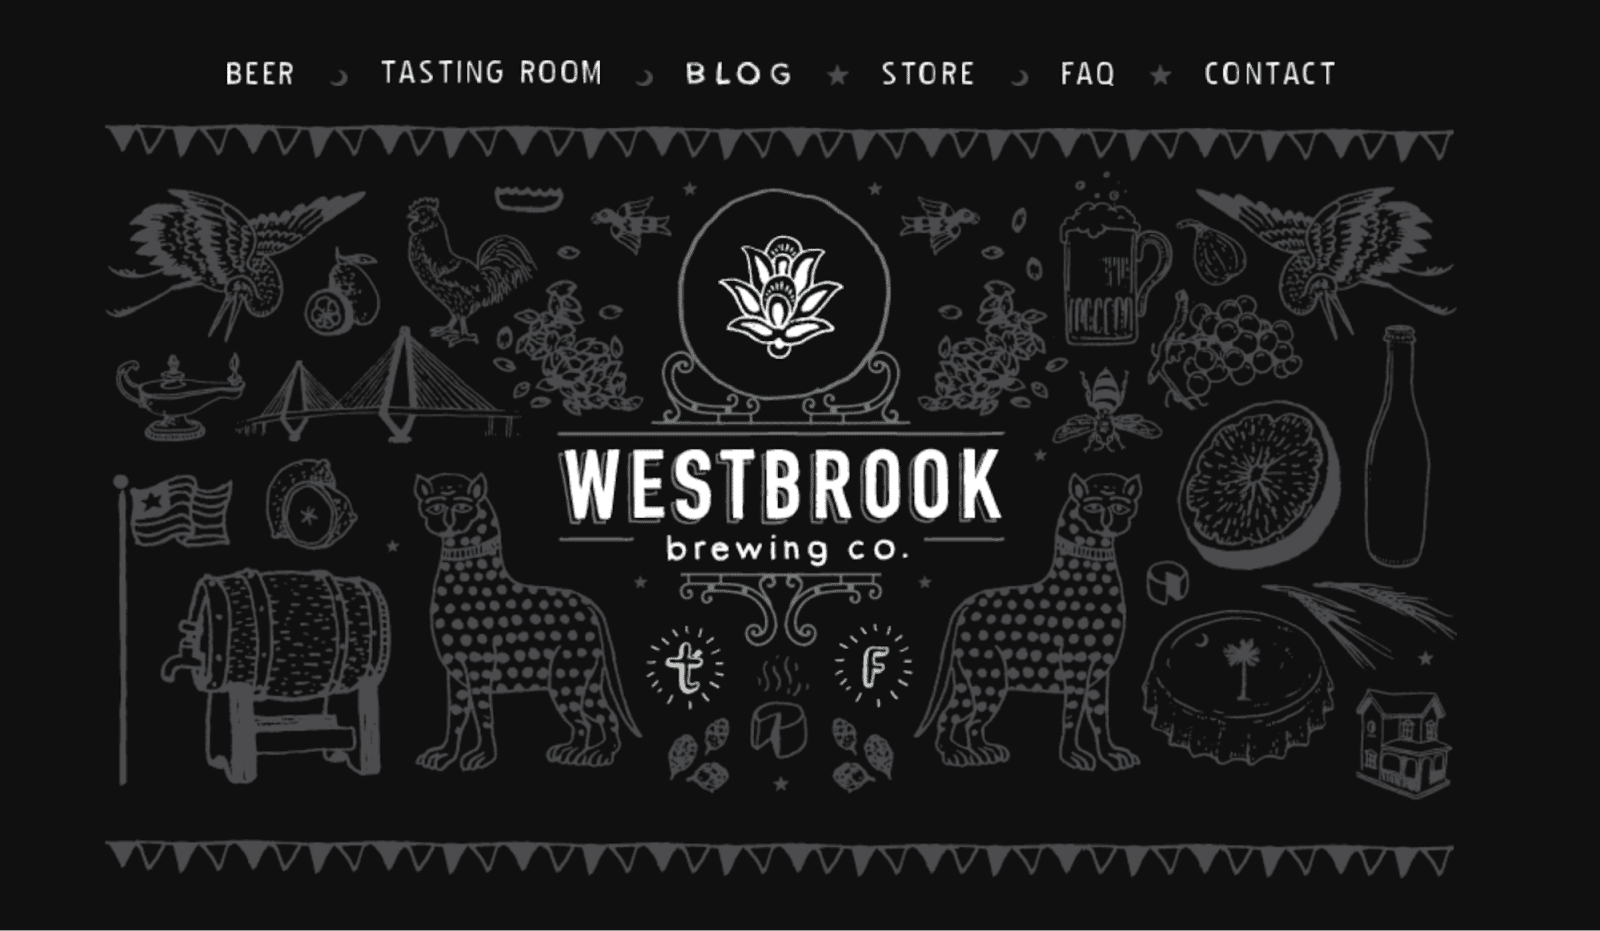 westbrook brewery image